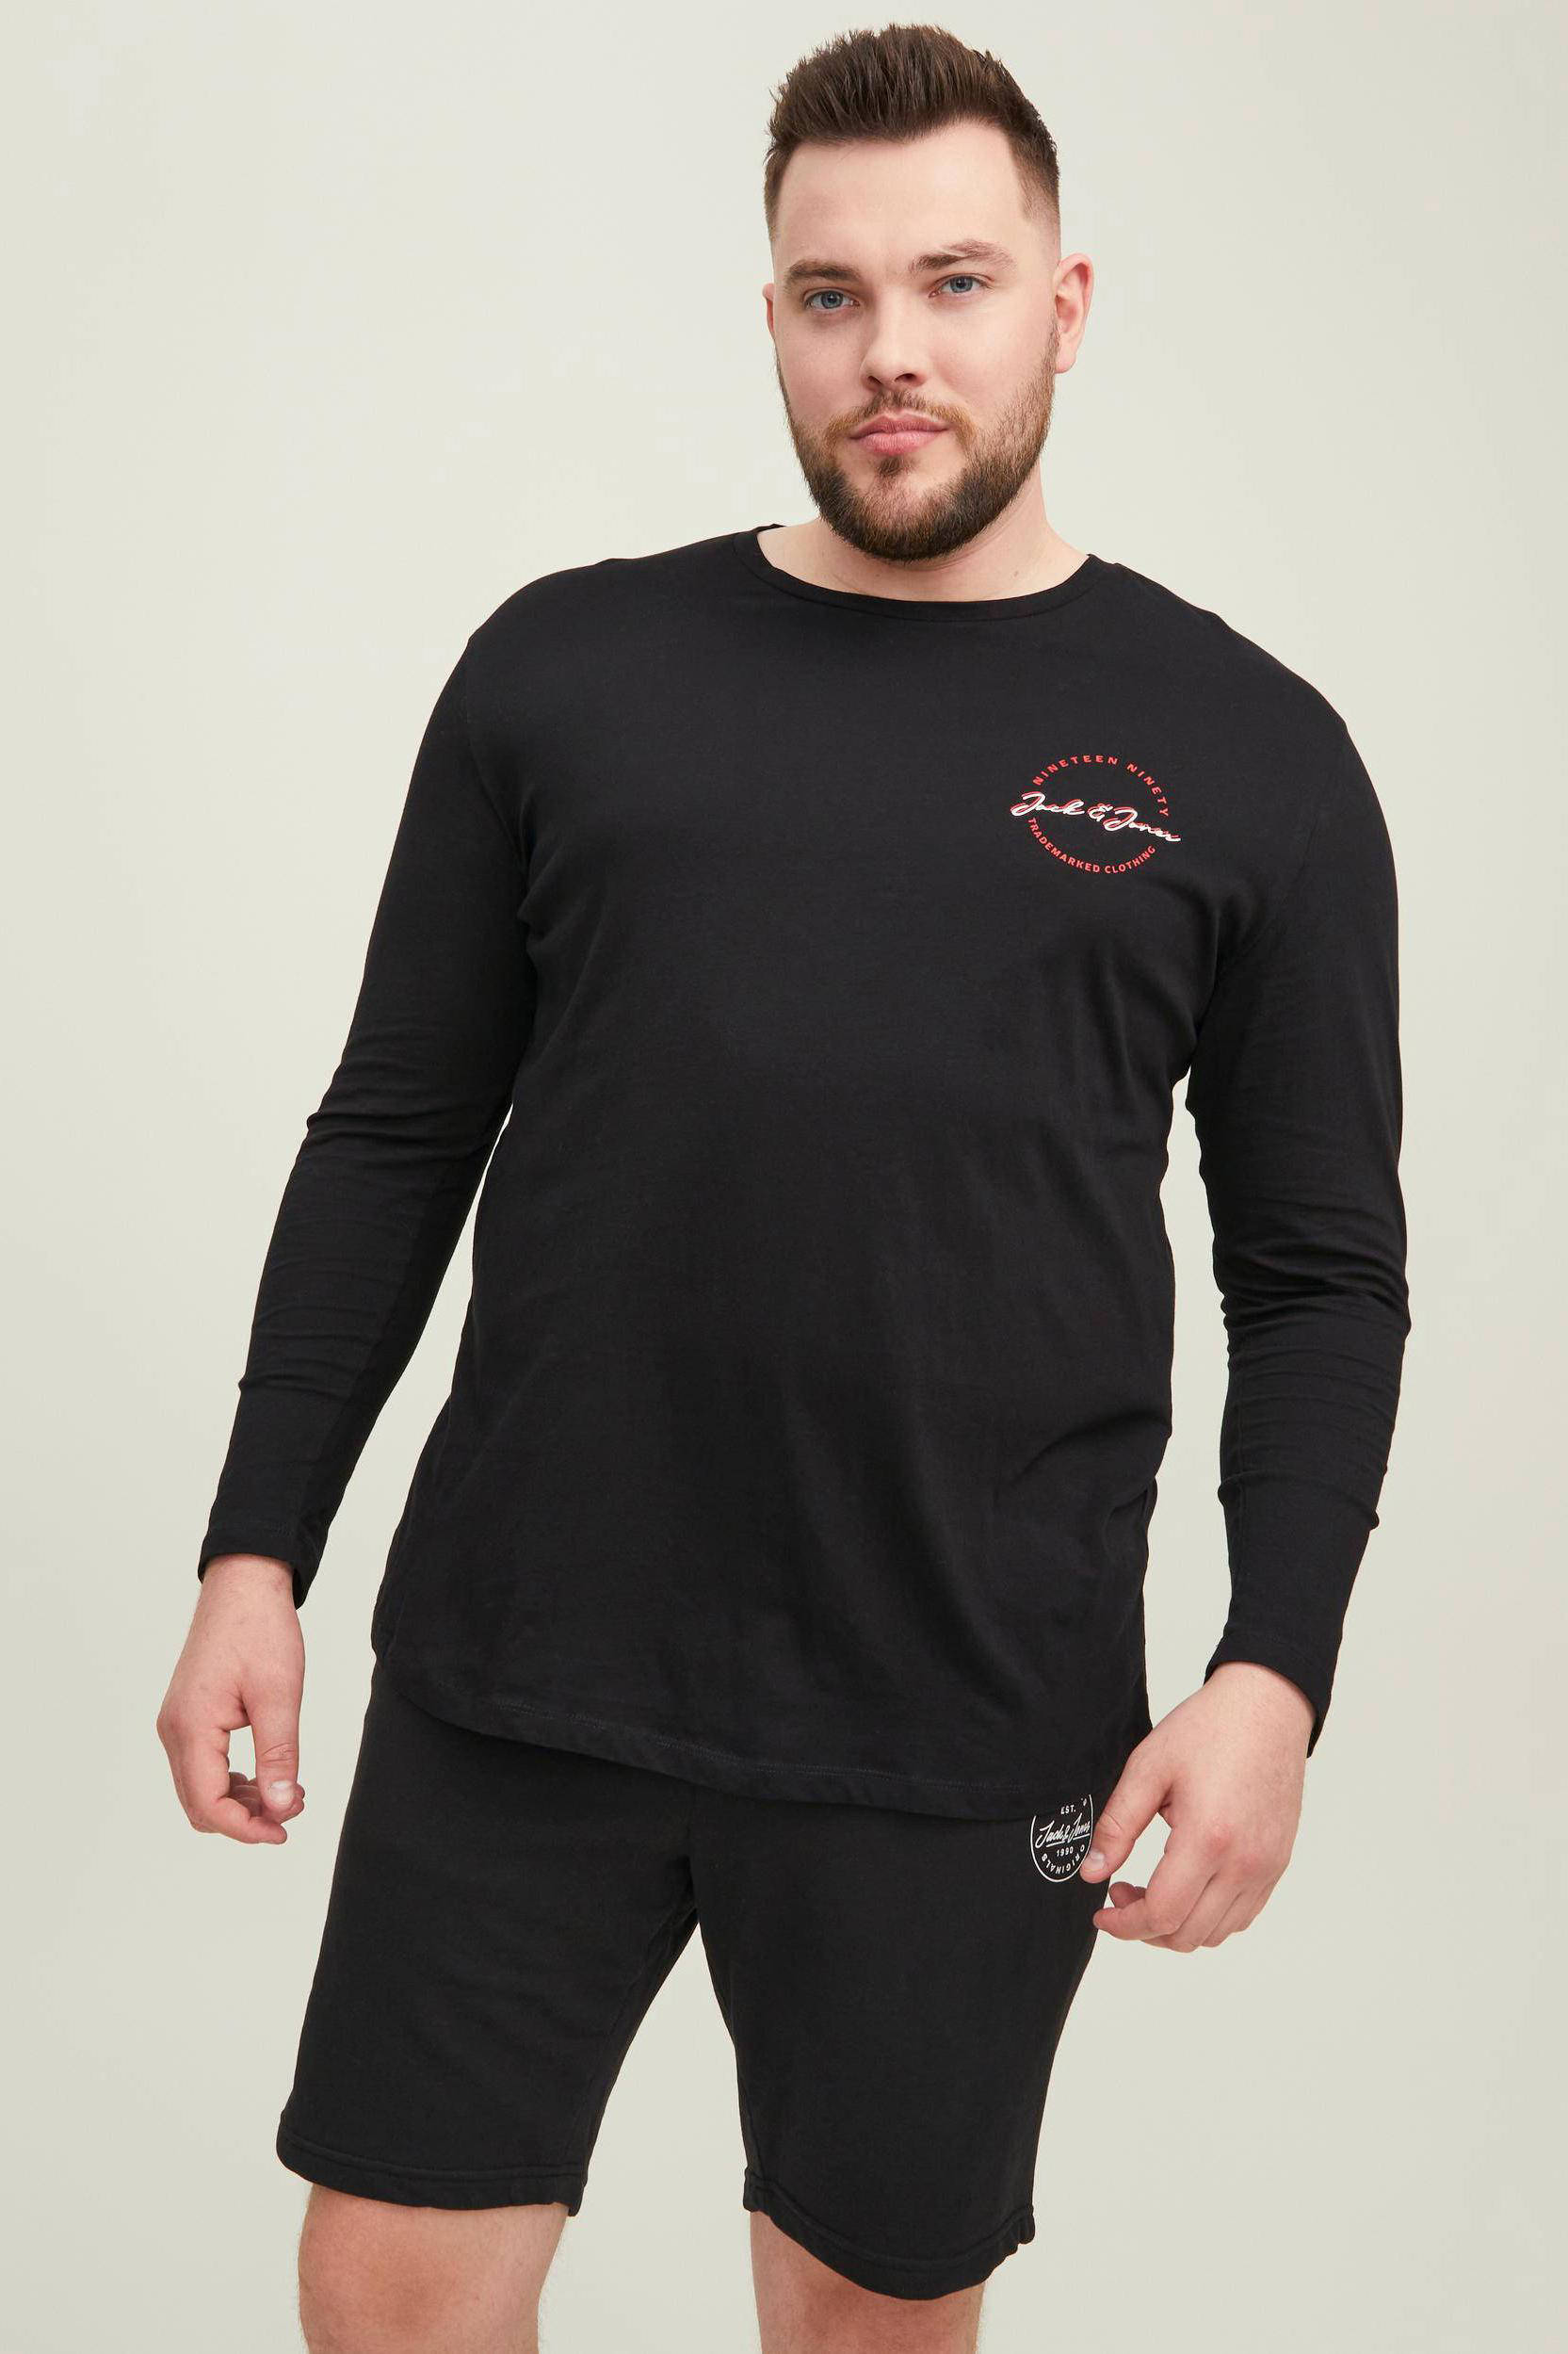 wehkamp Heren Kleding Tops & Shirts Shirts Lange Mouwen Shirts Longsleeve JJSTAMP Plus Size met logo black 